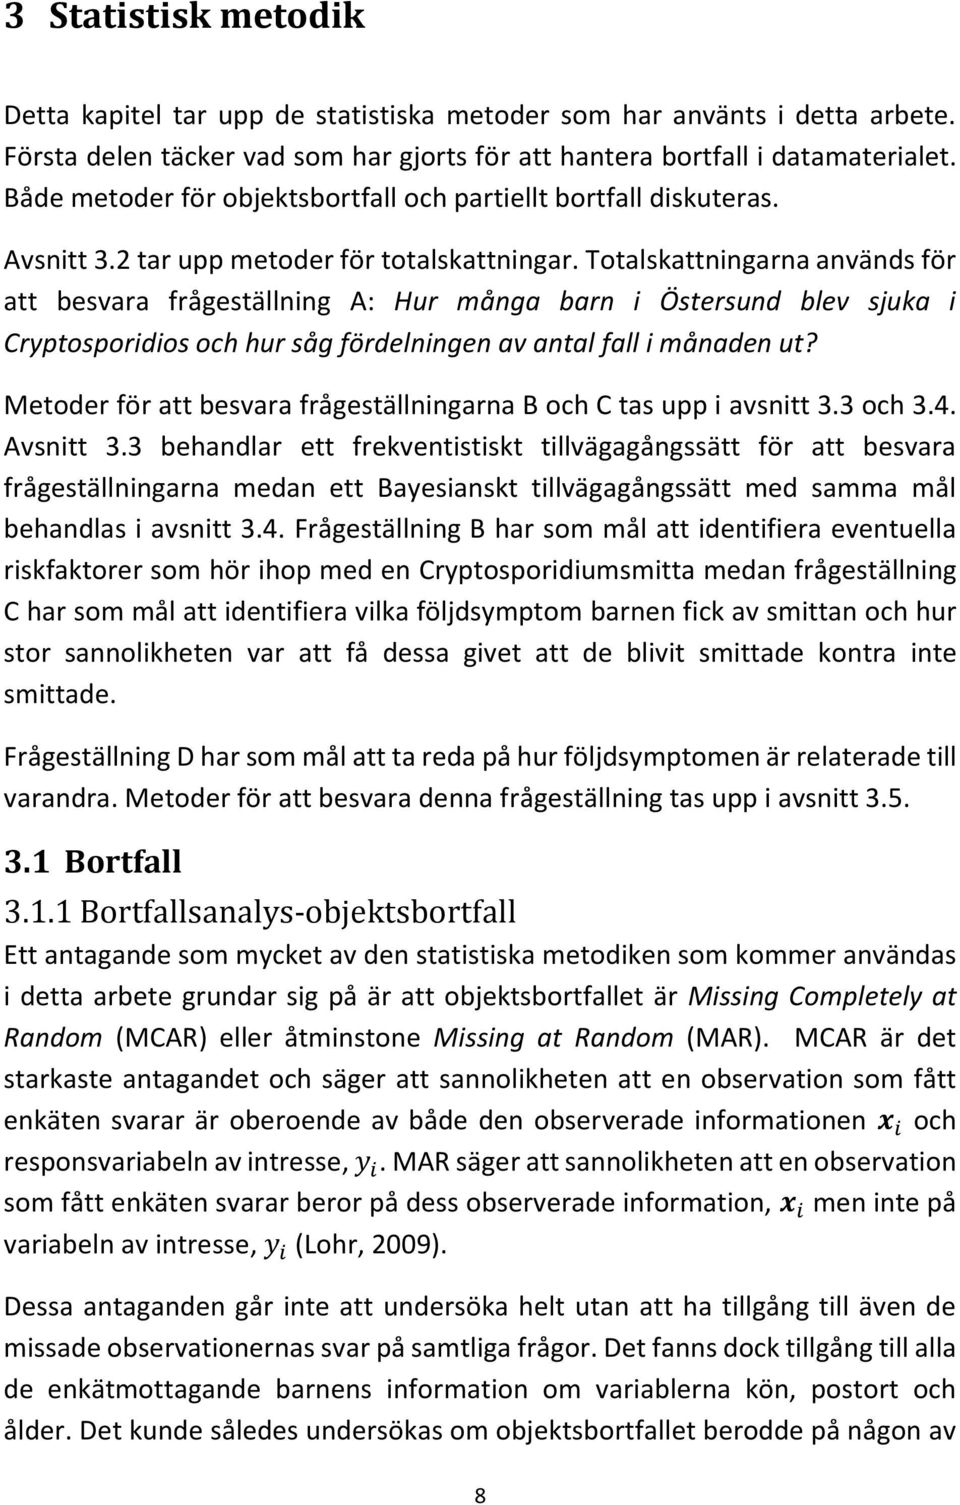 Totalskattningarna används för att besvara frågeställning A: Hur många barn i Östersund blev sjuka i Cryptosporidios och hur såg fördelningen av antal fall i månaden ut?